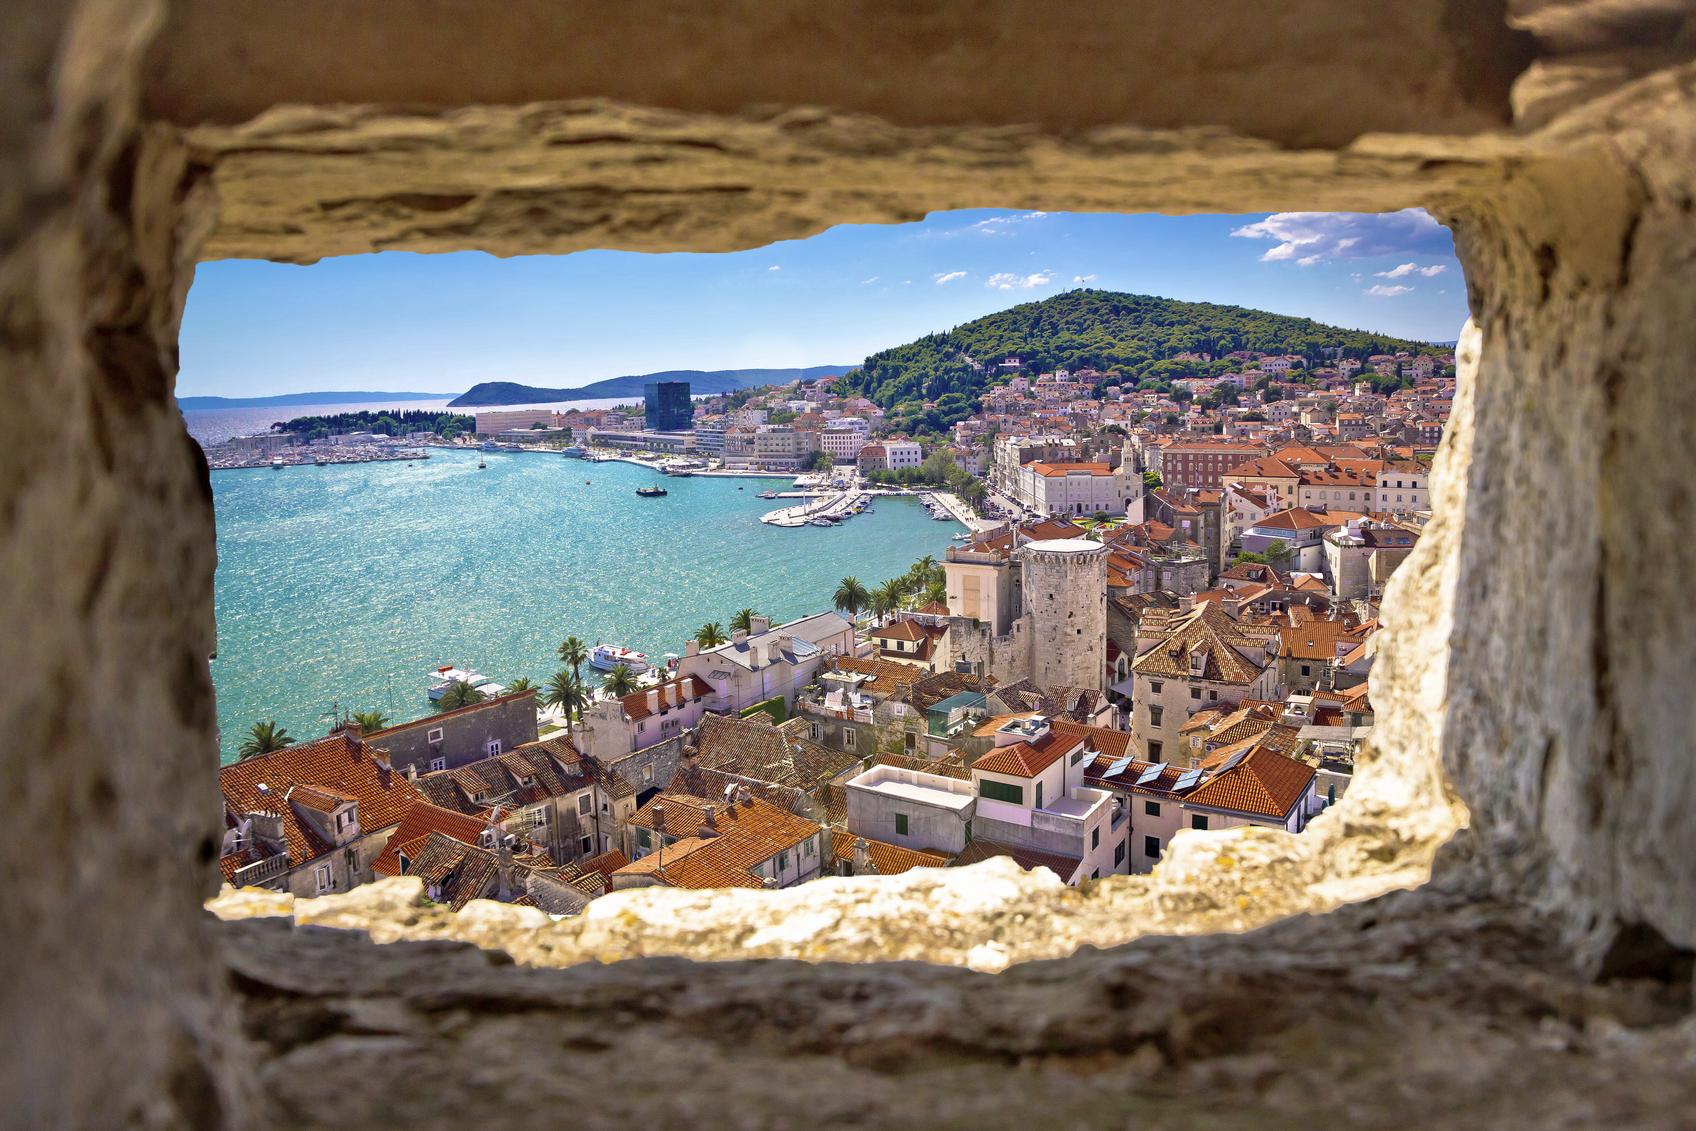 De prachtige omgeving van Split. (foto istock)